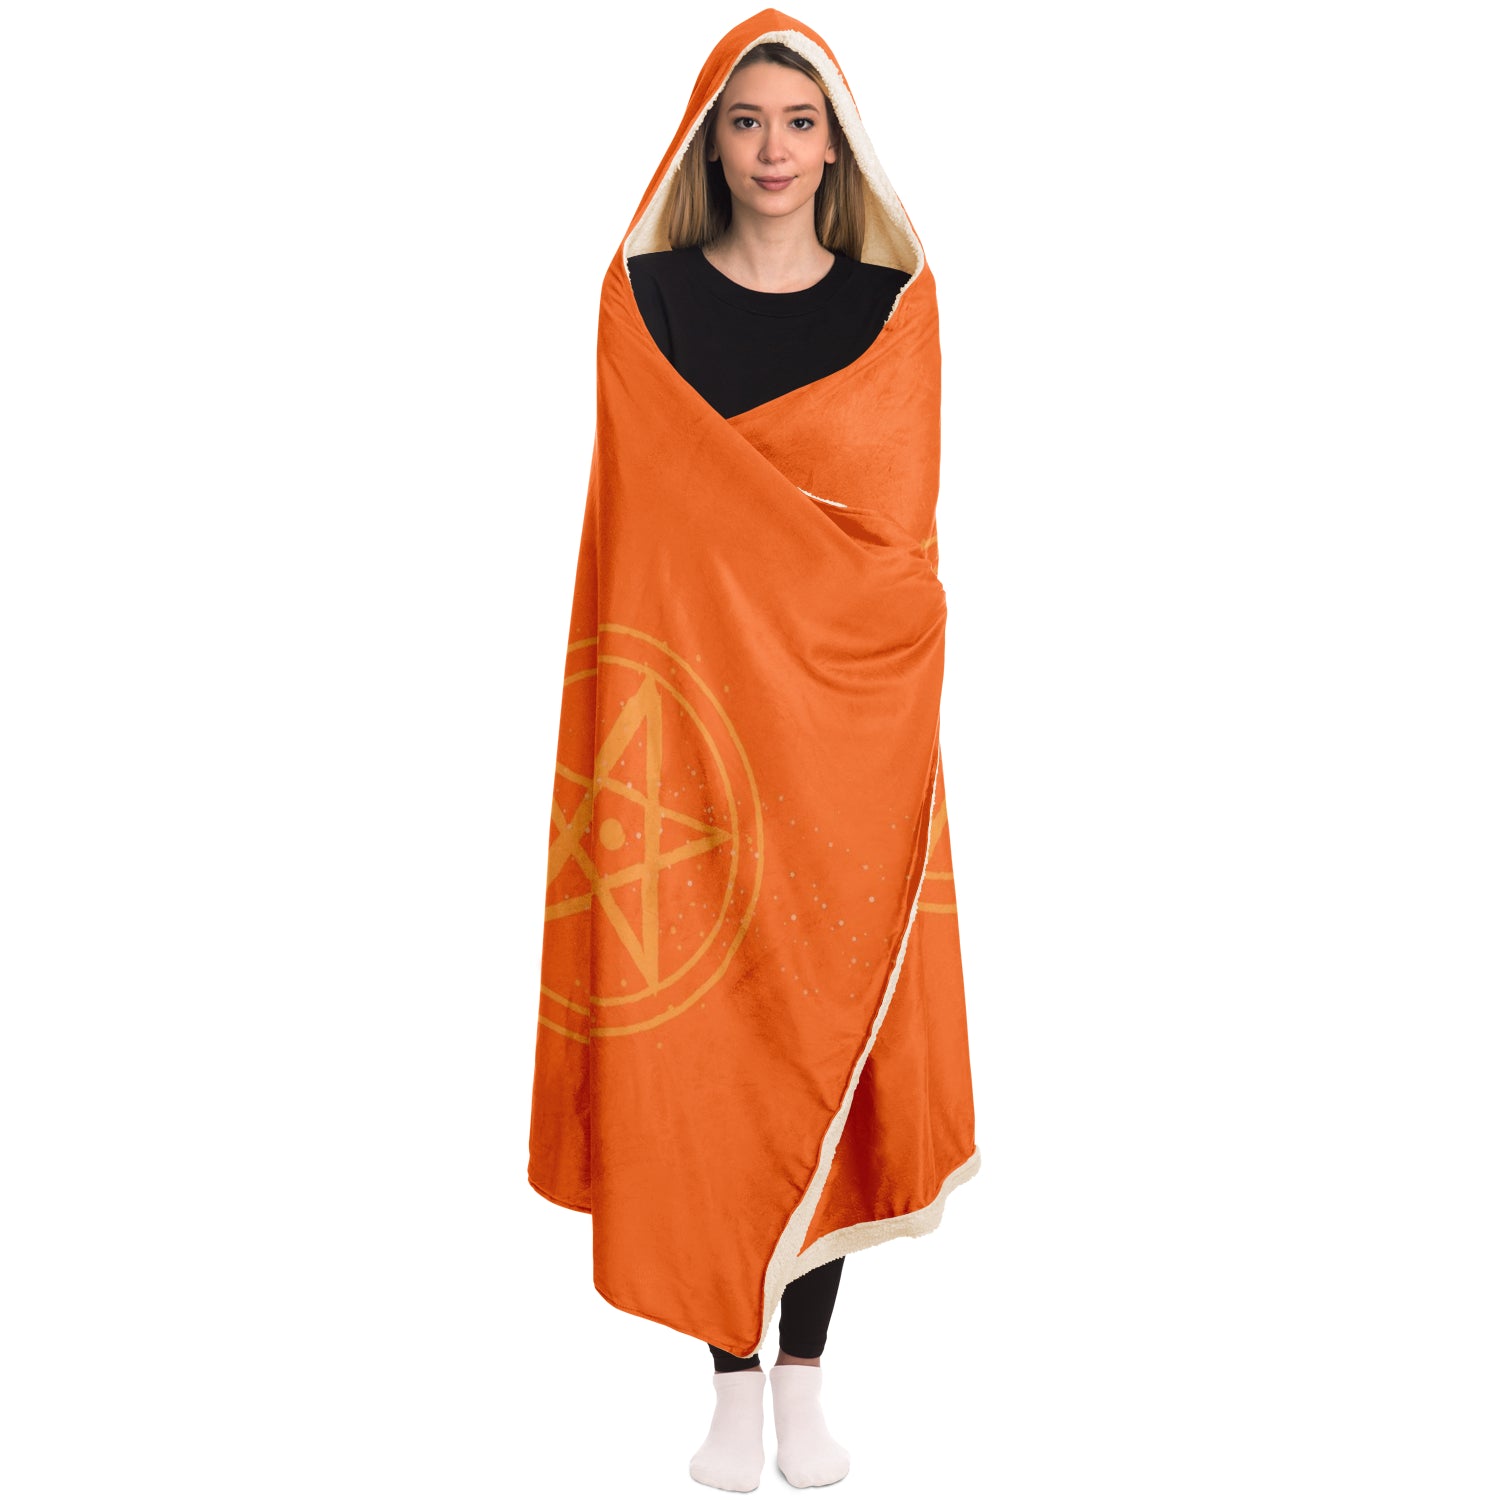 Baphomet 3D Hooded Blanket - Orange